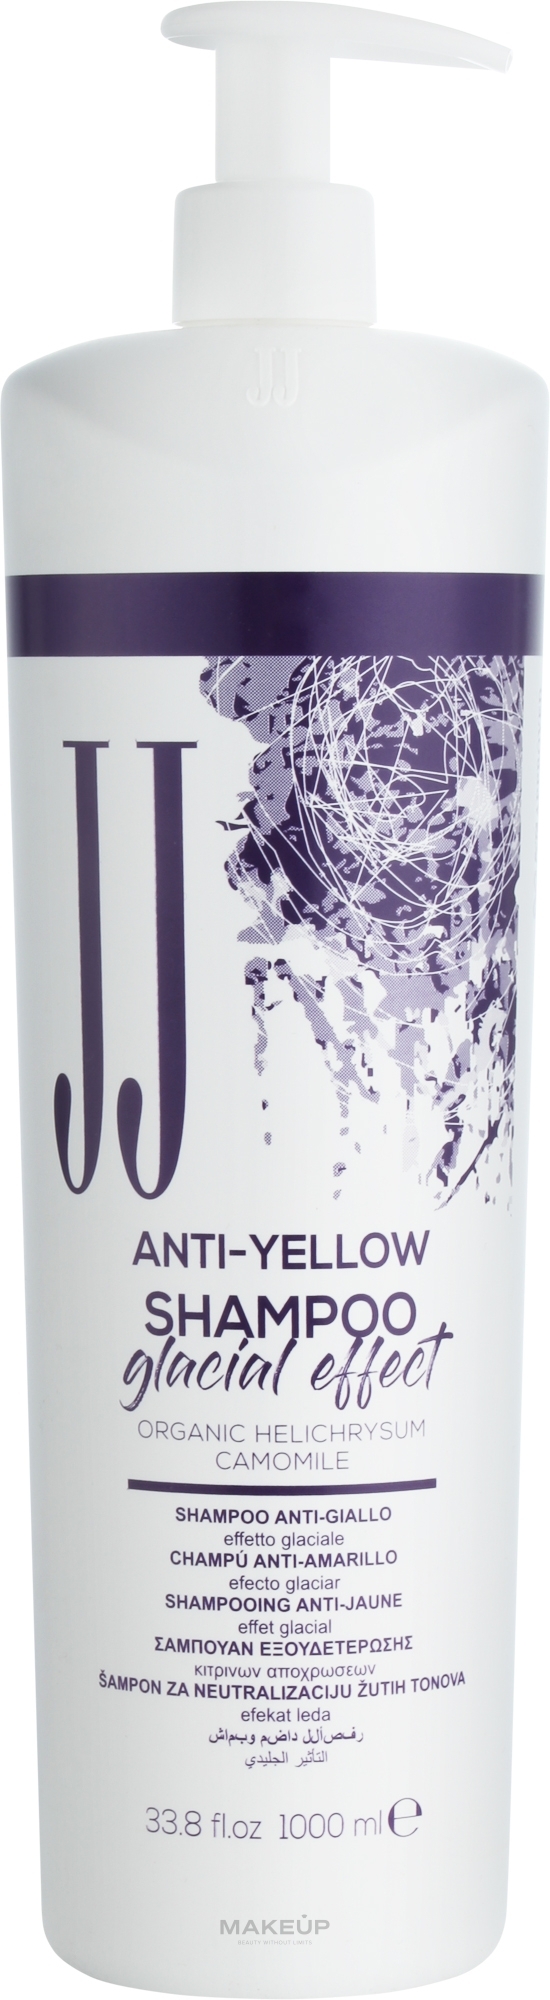 Шампунь от желтизны волос "Ледяной эффект" - JJ Anti-Yellow Shampoo Glacial Effect — фото 1000ml